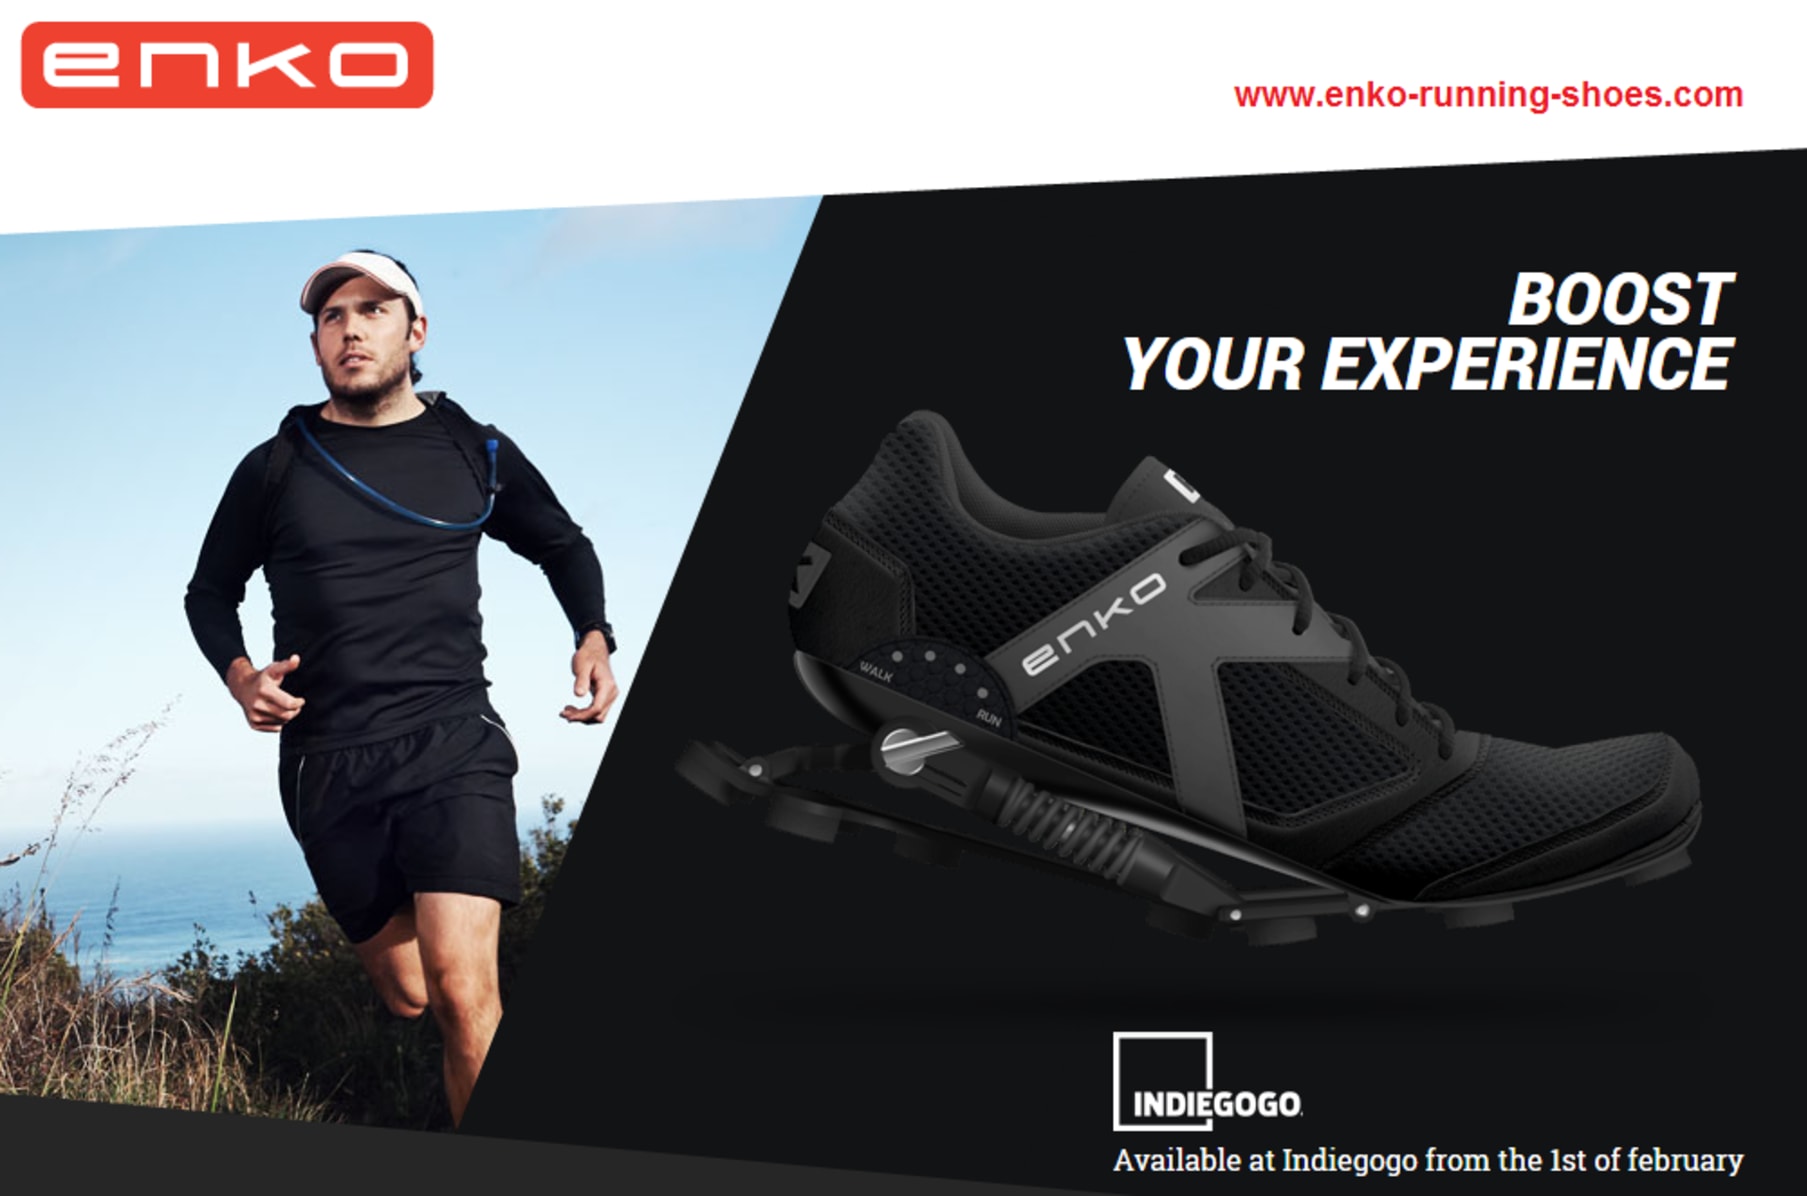 ENKO Running Shoe - Comfort and Power Indiegogo